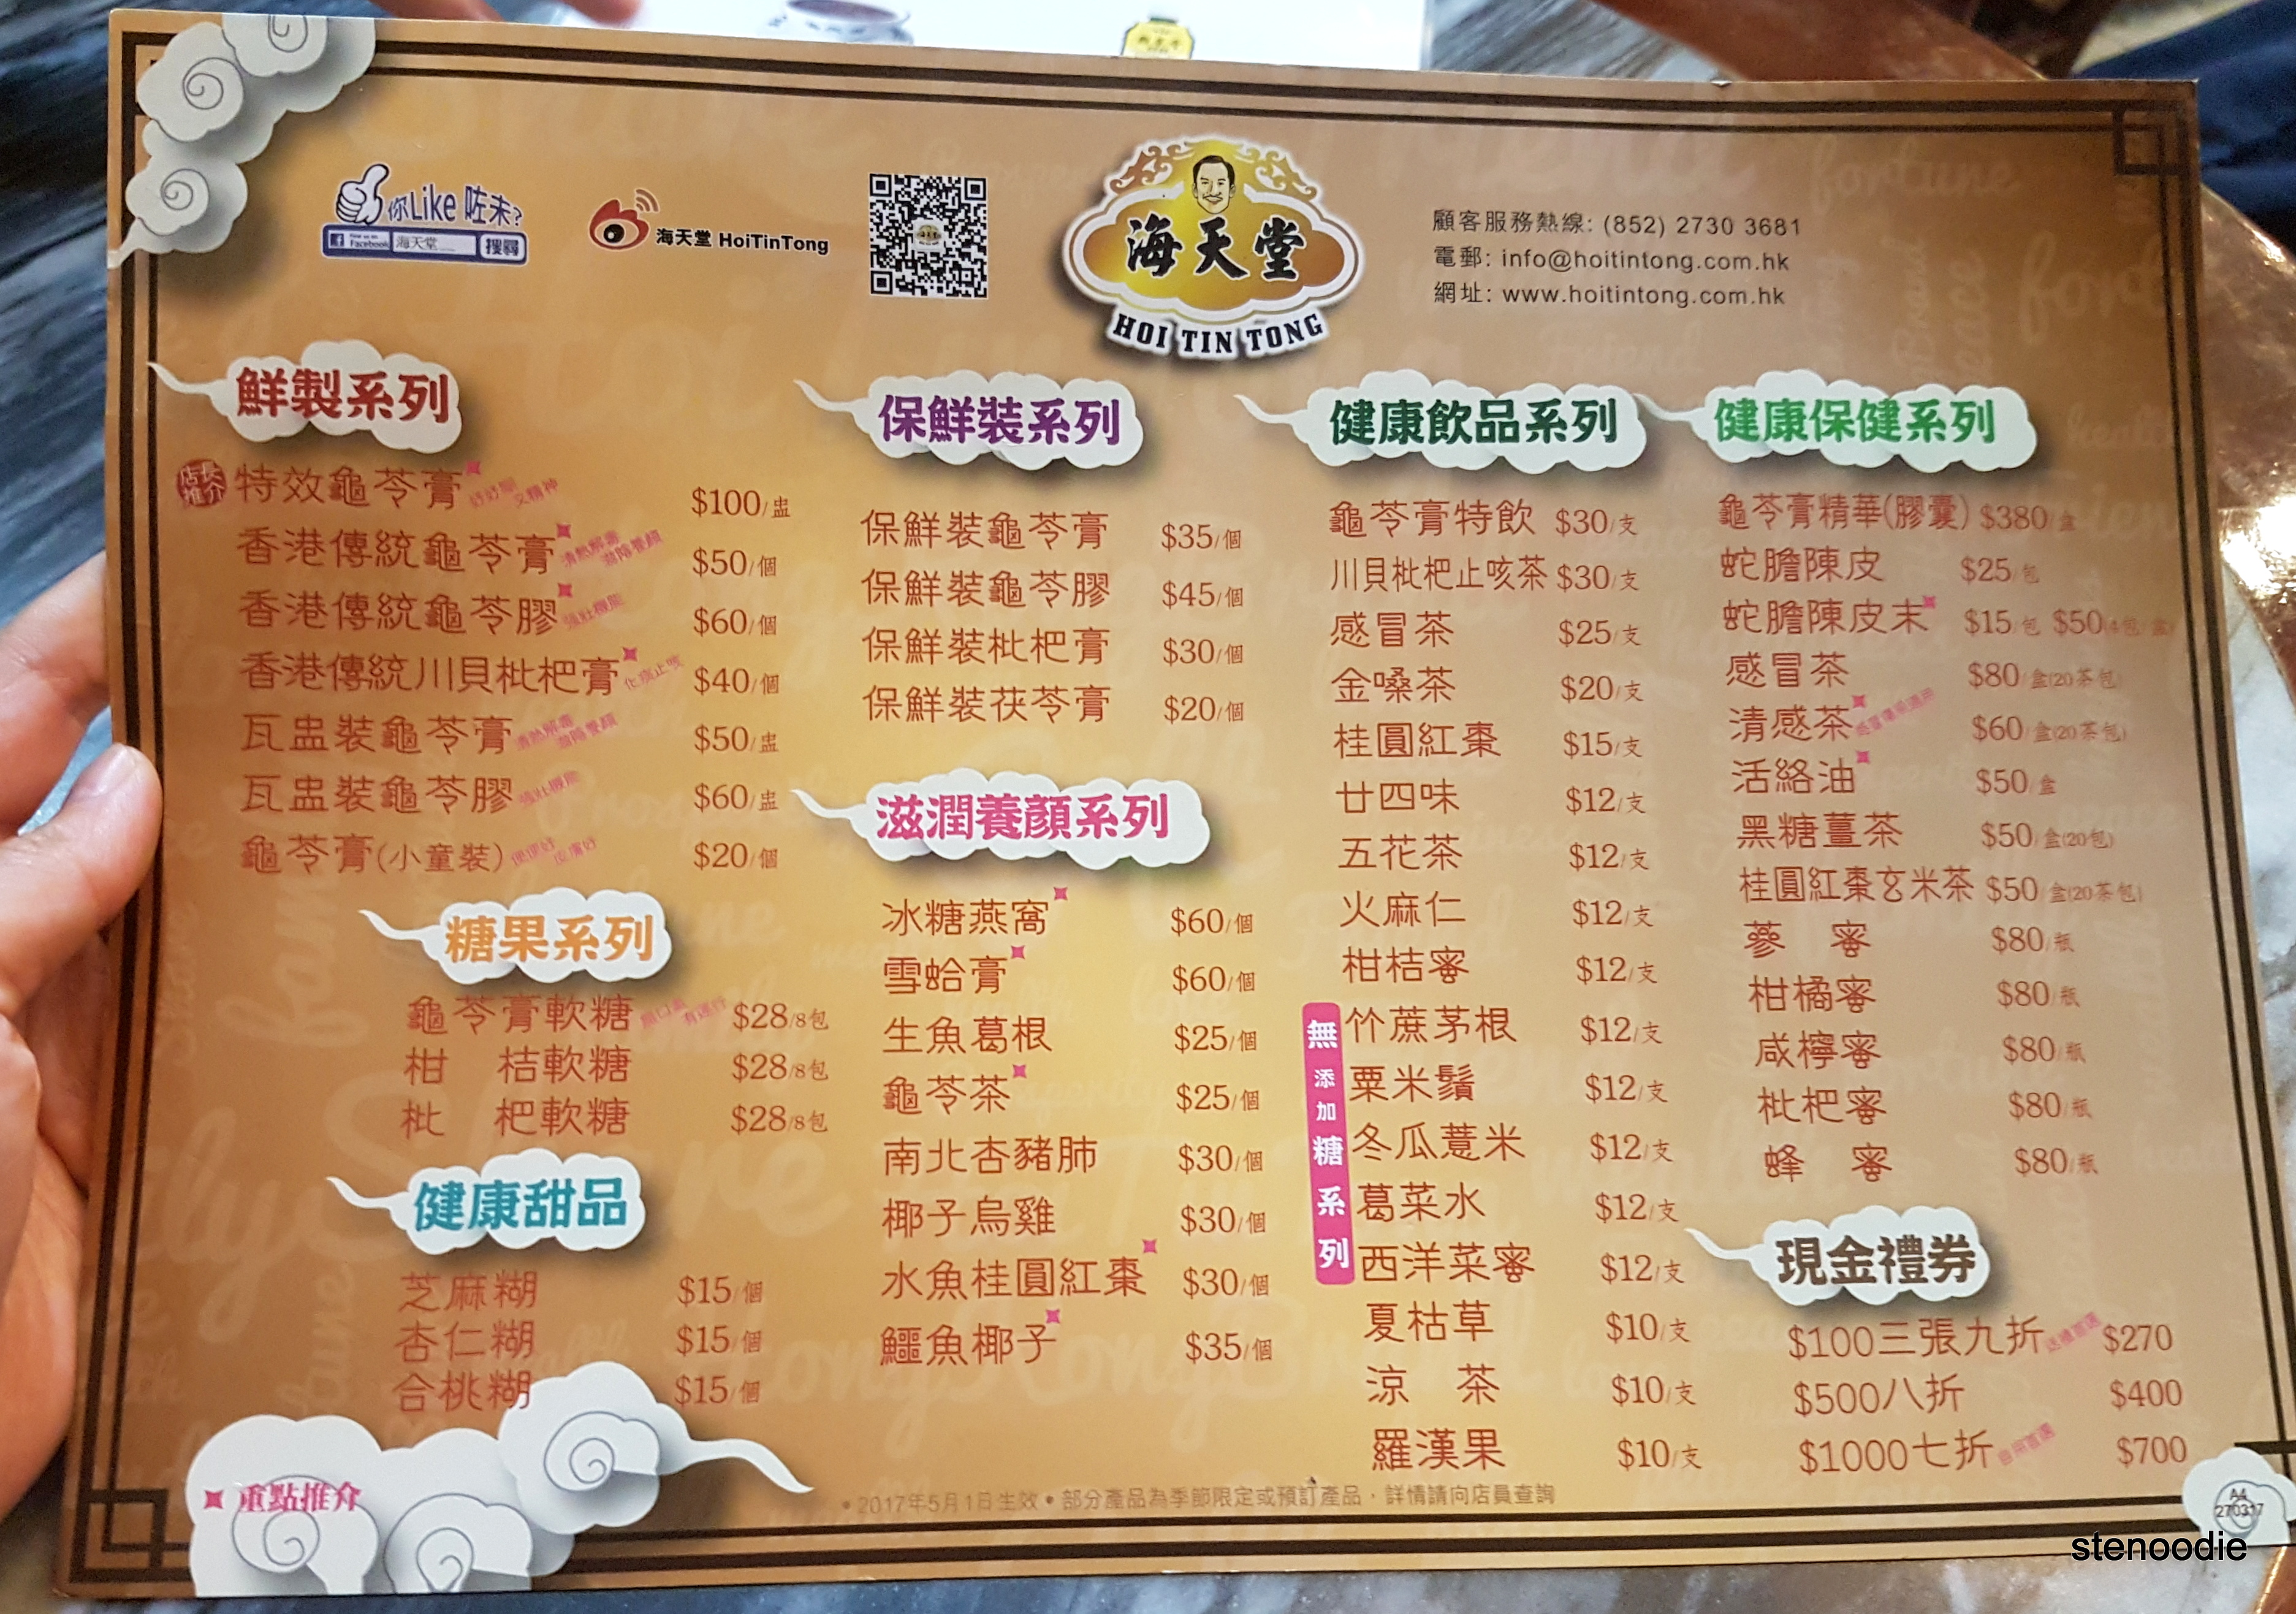 Hoi Tin Tong menu and prices